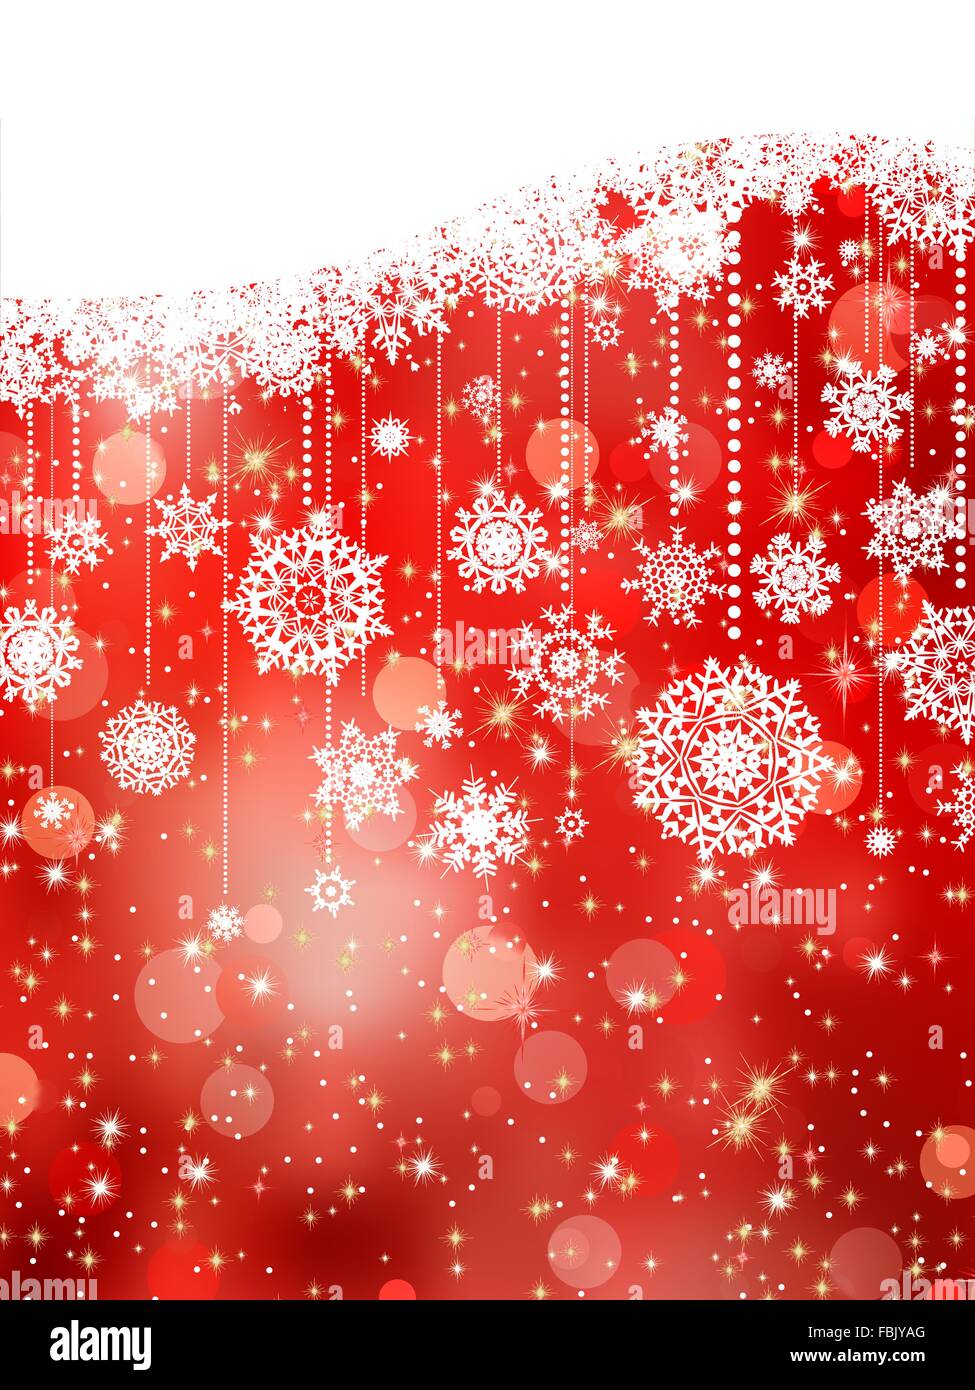 Weihnachten Hintergrund mit Schneeflocken auf rot. EPS 8 Stock Vektor